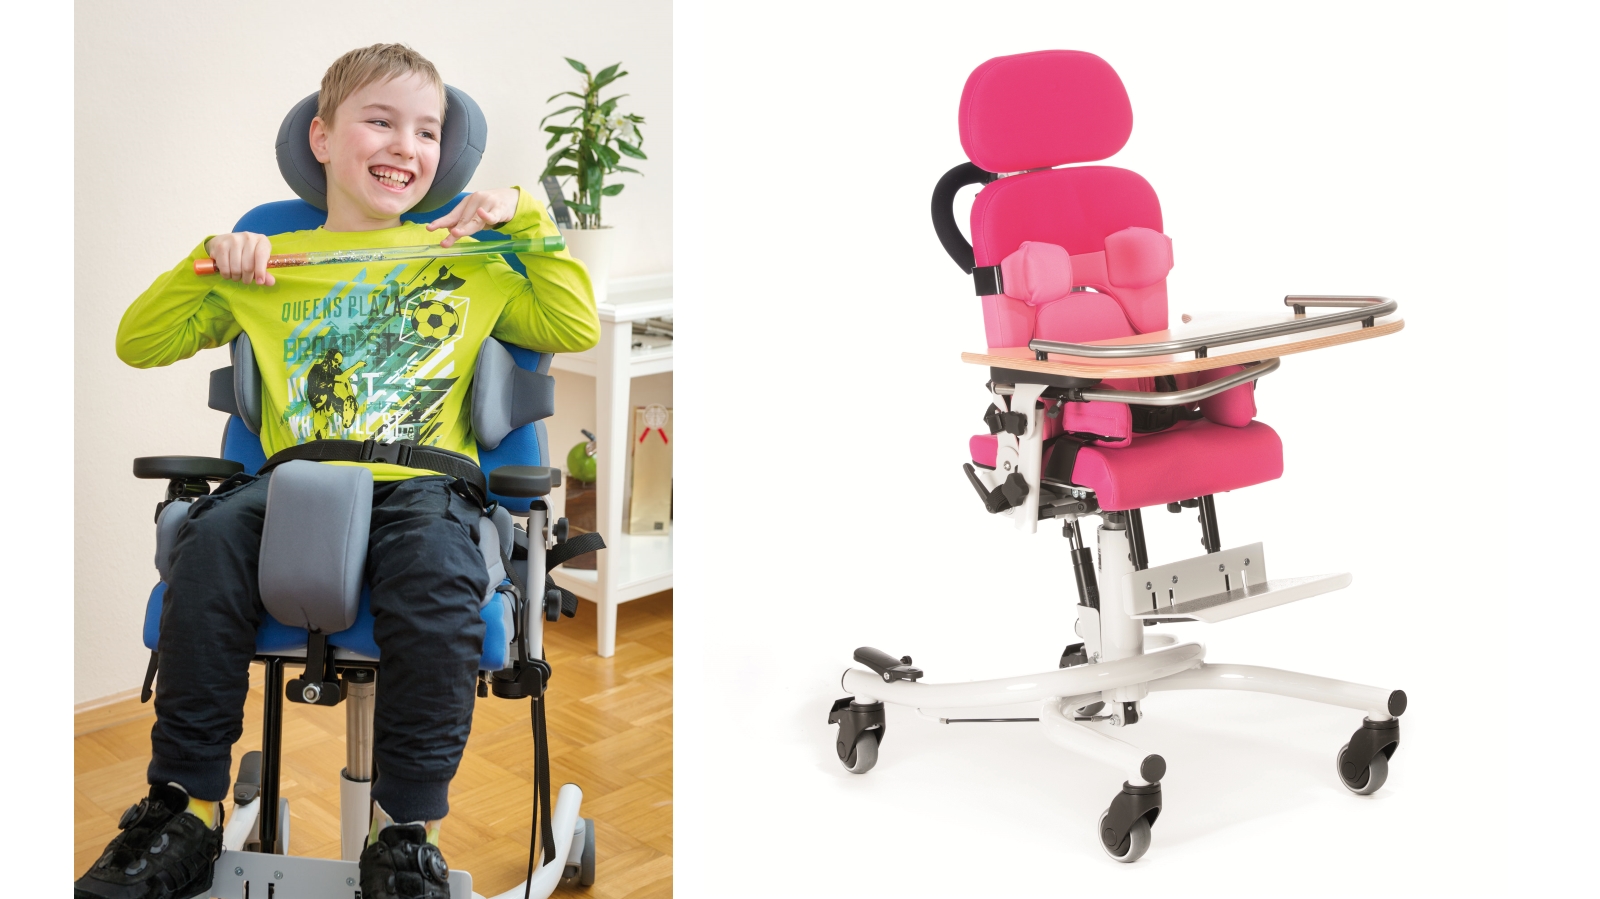 Stuhlansichten, mit und ohne Kind. Stuhl auf 4 Rollen mit Kopfstütze und Seitenpolstern